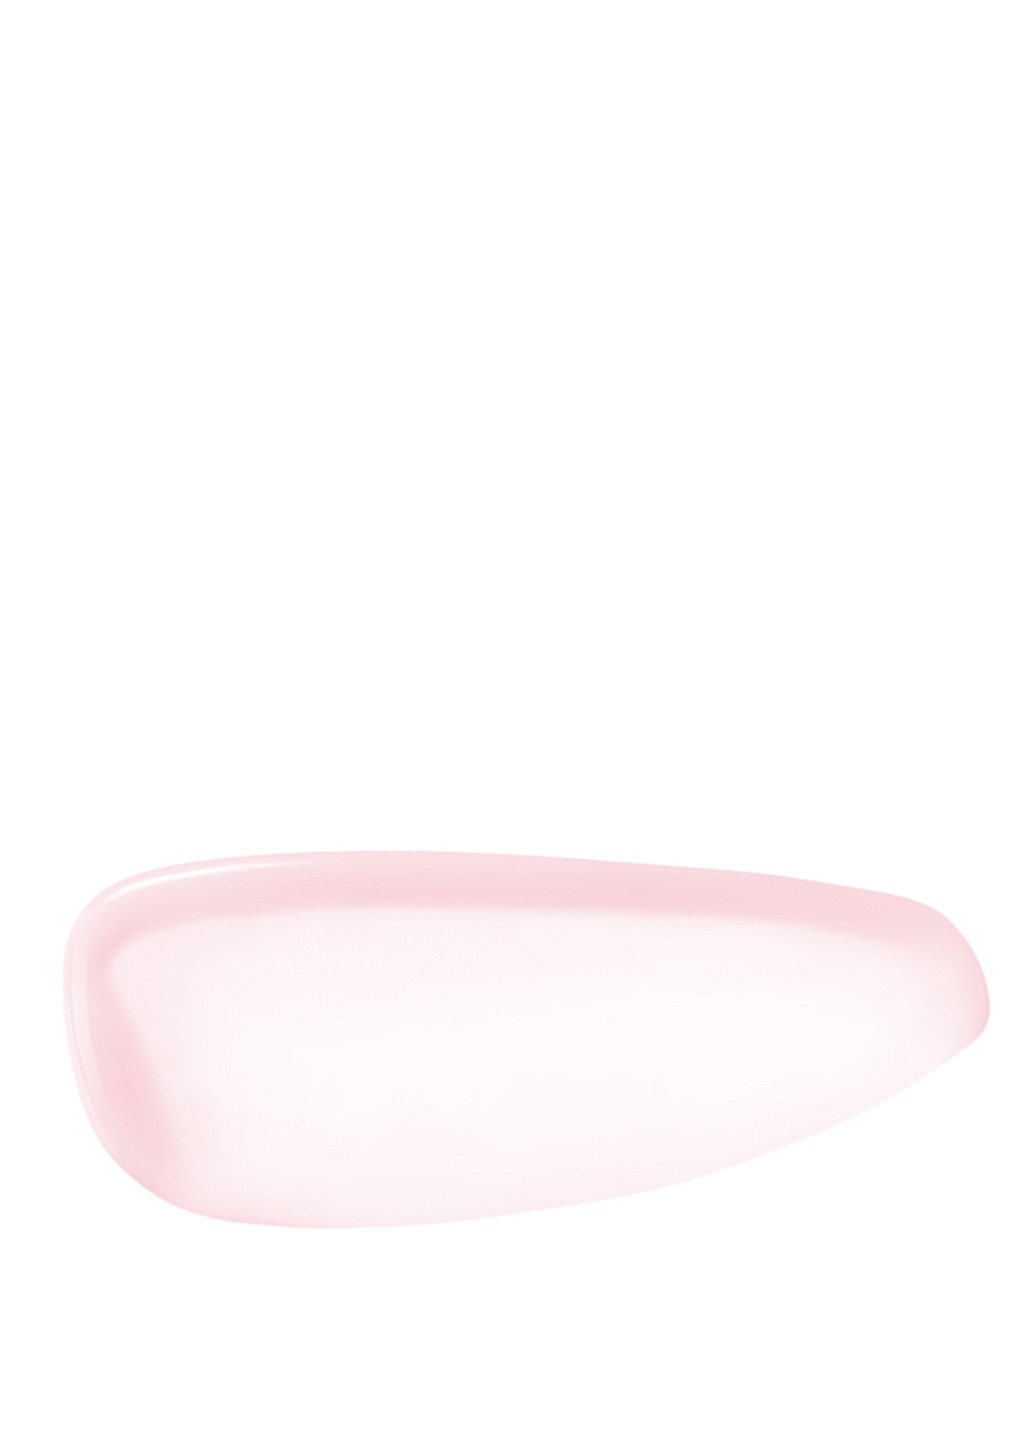 Сыворотка для лица с эффектом сияния (розовый), 10 мл Kiko светло-розовая